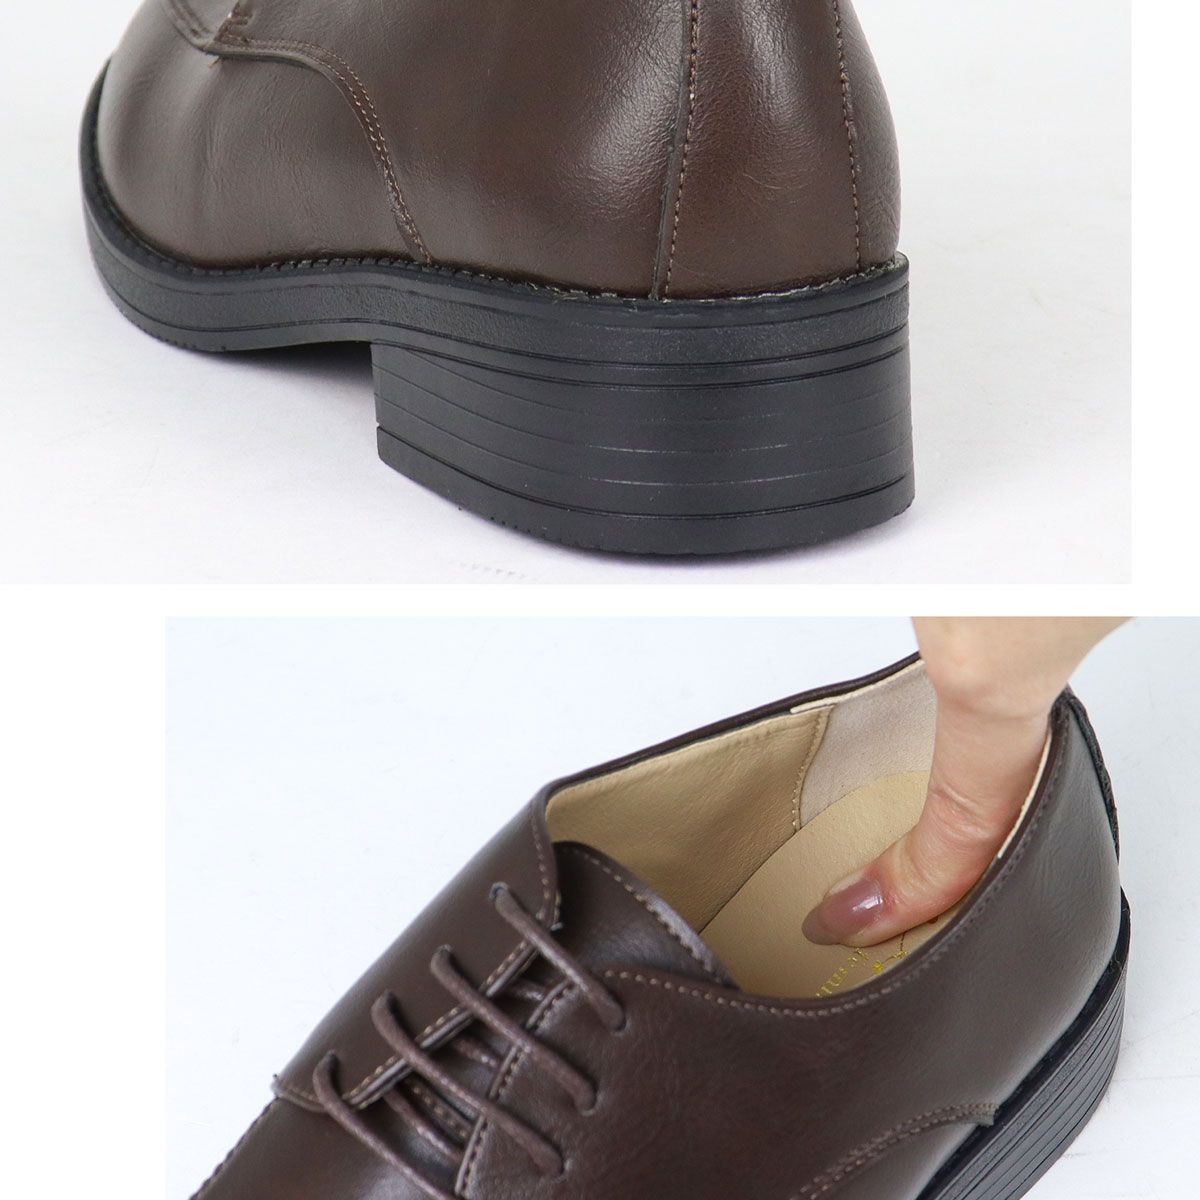  гонки выше обувь женский чёрный .. обувь 3.5cm каблук большой размер No.3576 22.5-27cm AAA+ комплект скидка объект 1 пара включая налог 3025 иен 